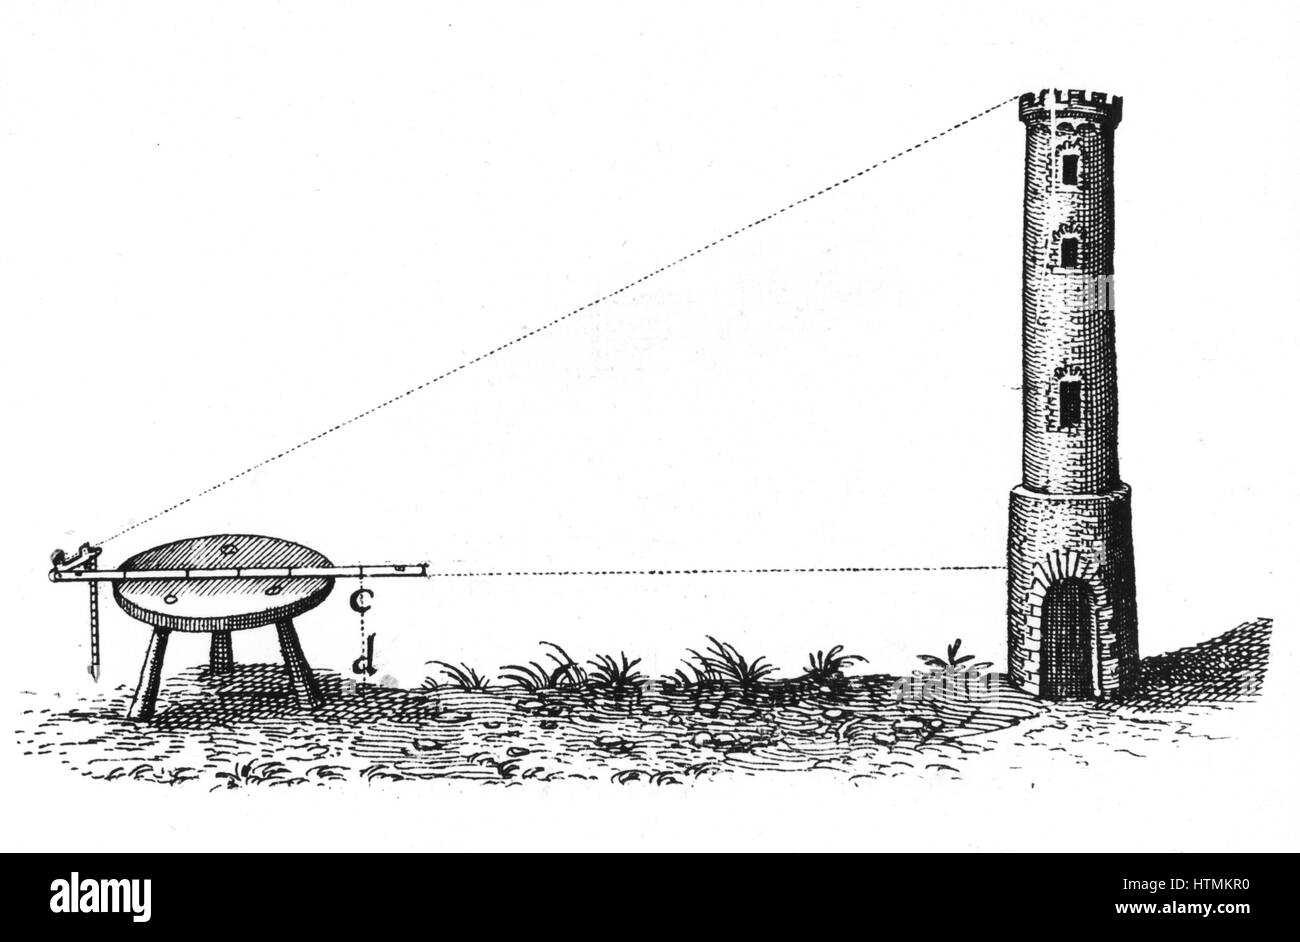 À l'aide d'une planchette et le personnel à charnière pour mesurer la hauteur d'une tour. De Robert Fludd 'Utriusque cosmi … historia", Oppenheim, 1617-1619. Gravure Banque D'Images